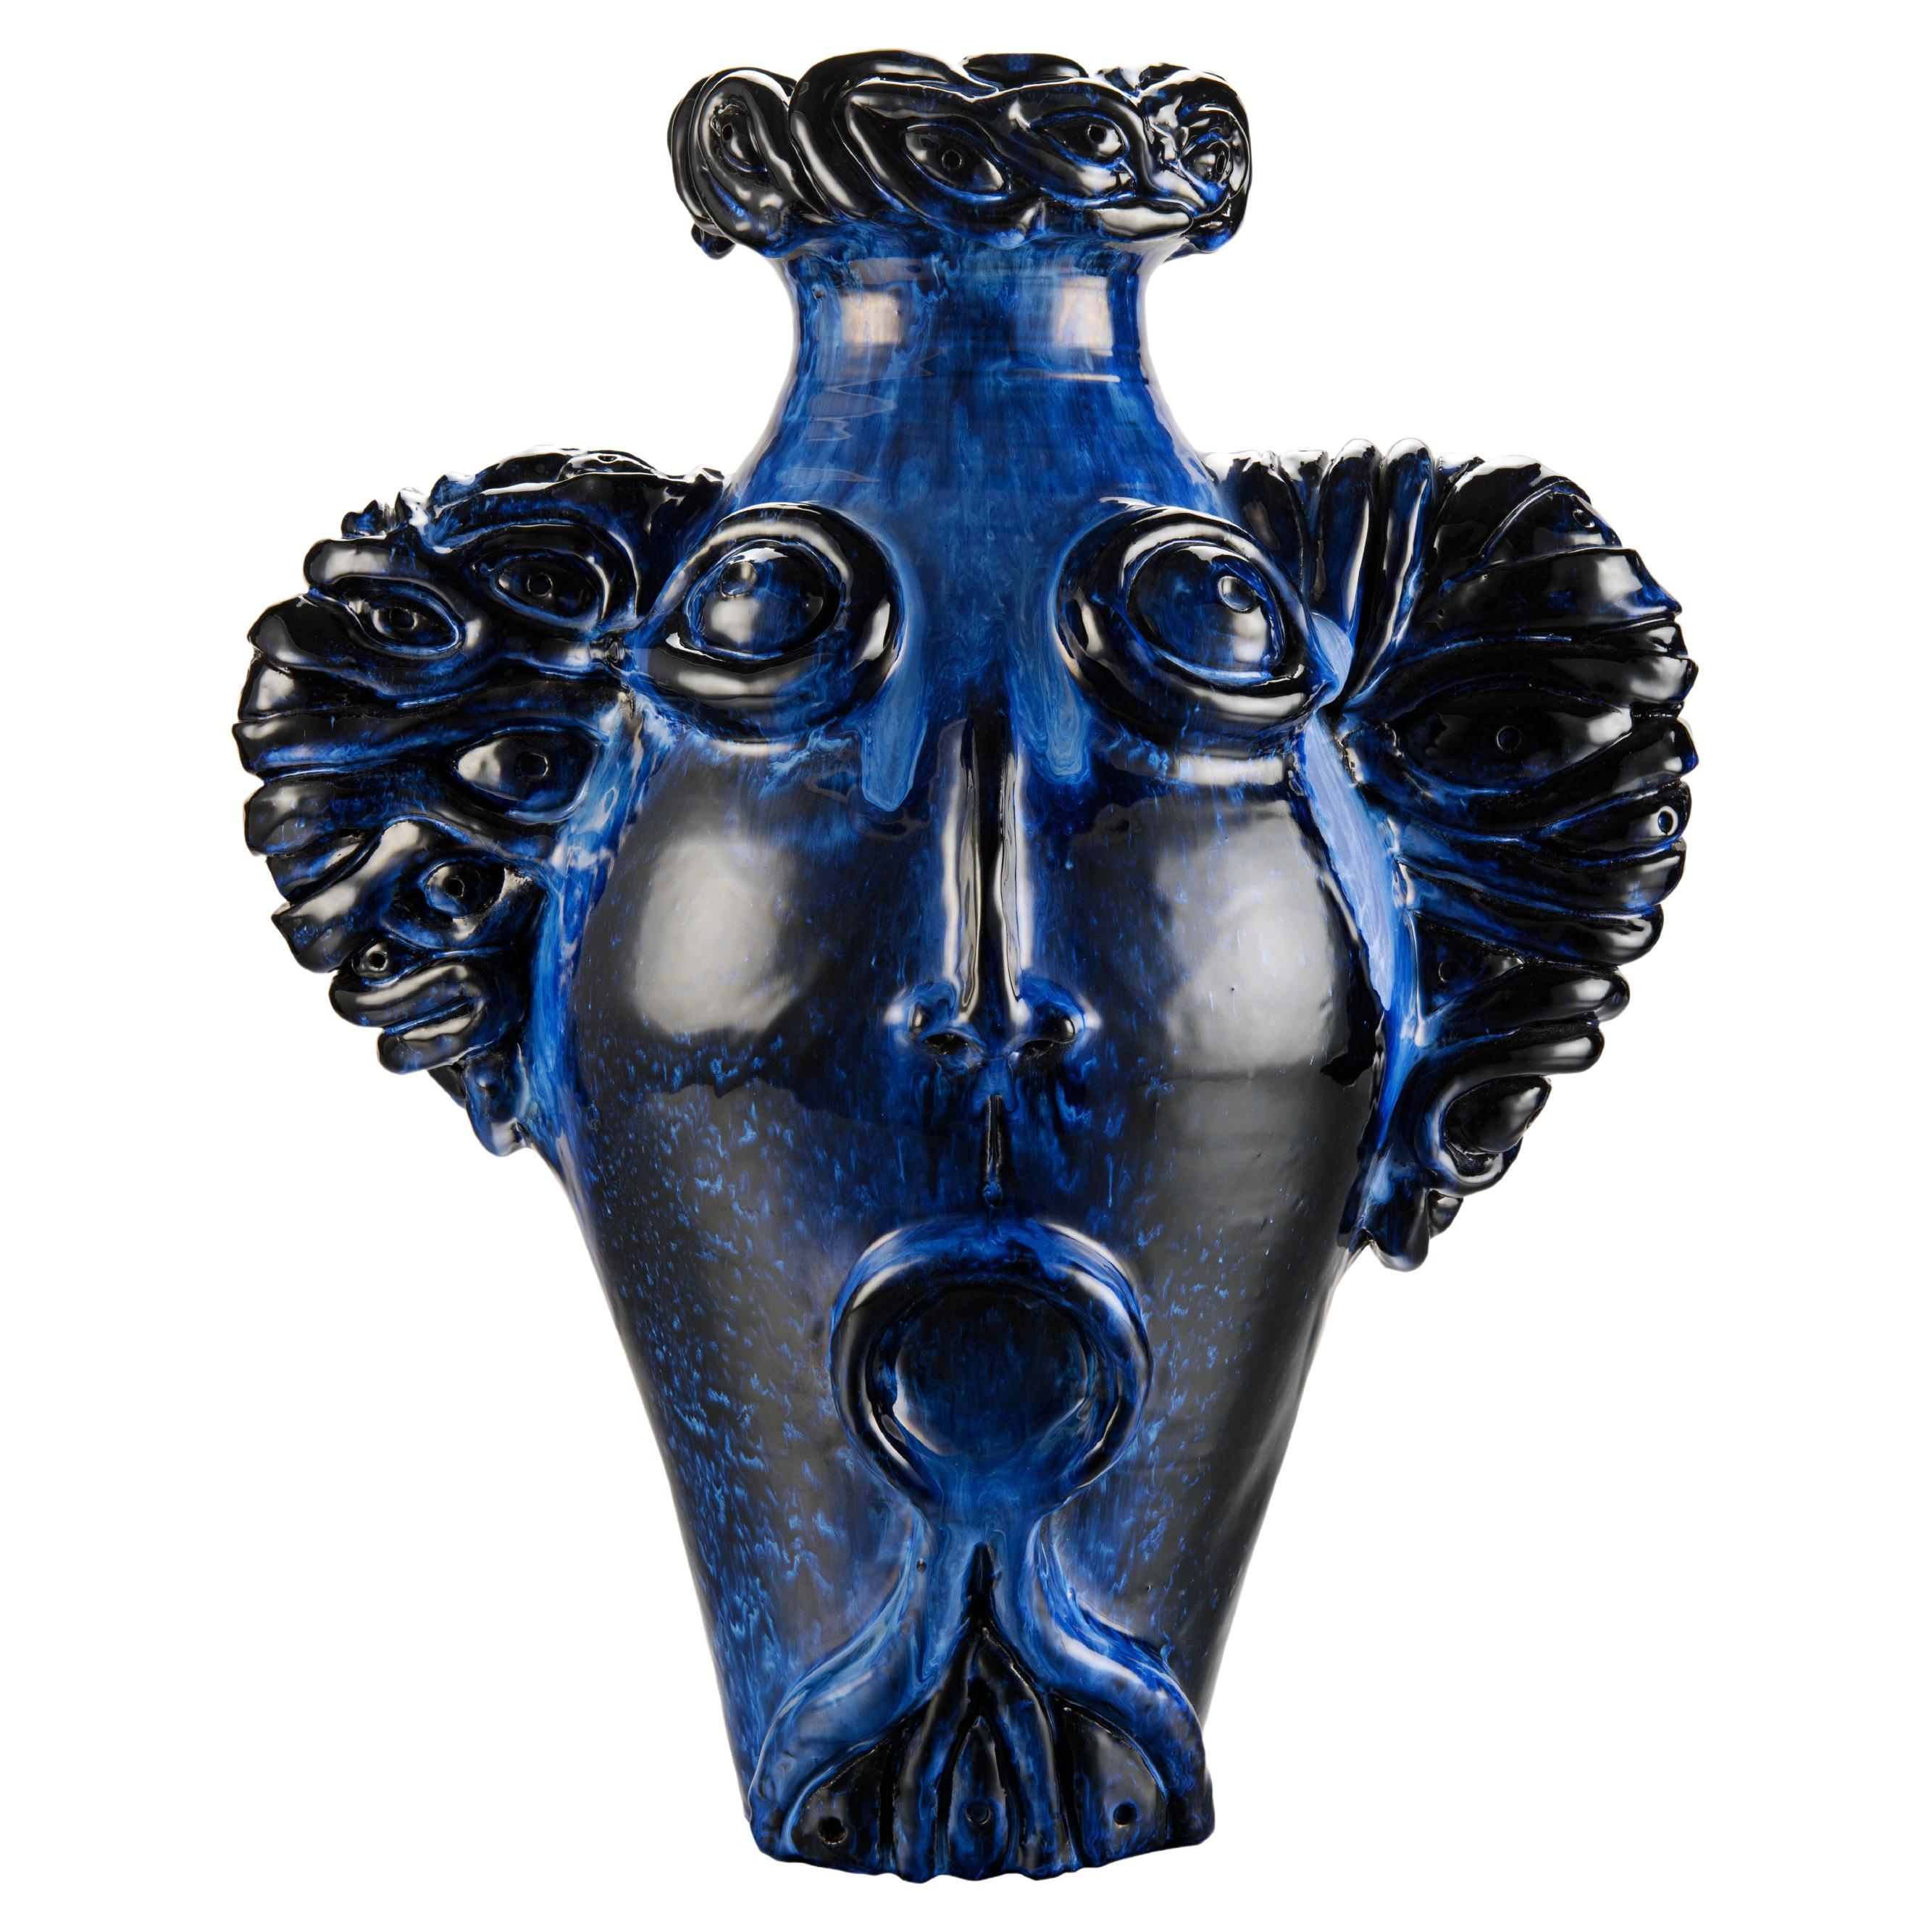 Freaklab-Vase, vollständig von Hand gefertigt aus Keramik, schillernde blaue Farbe